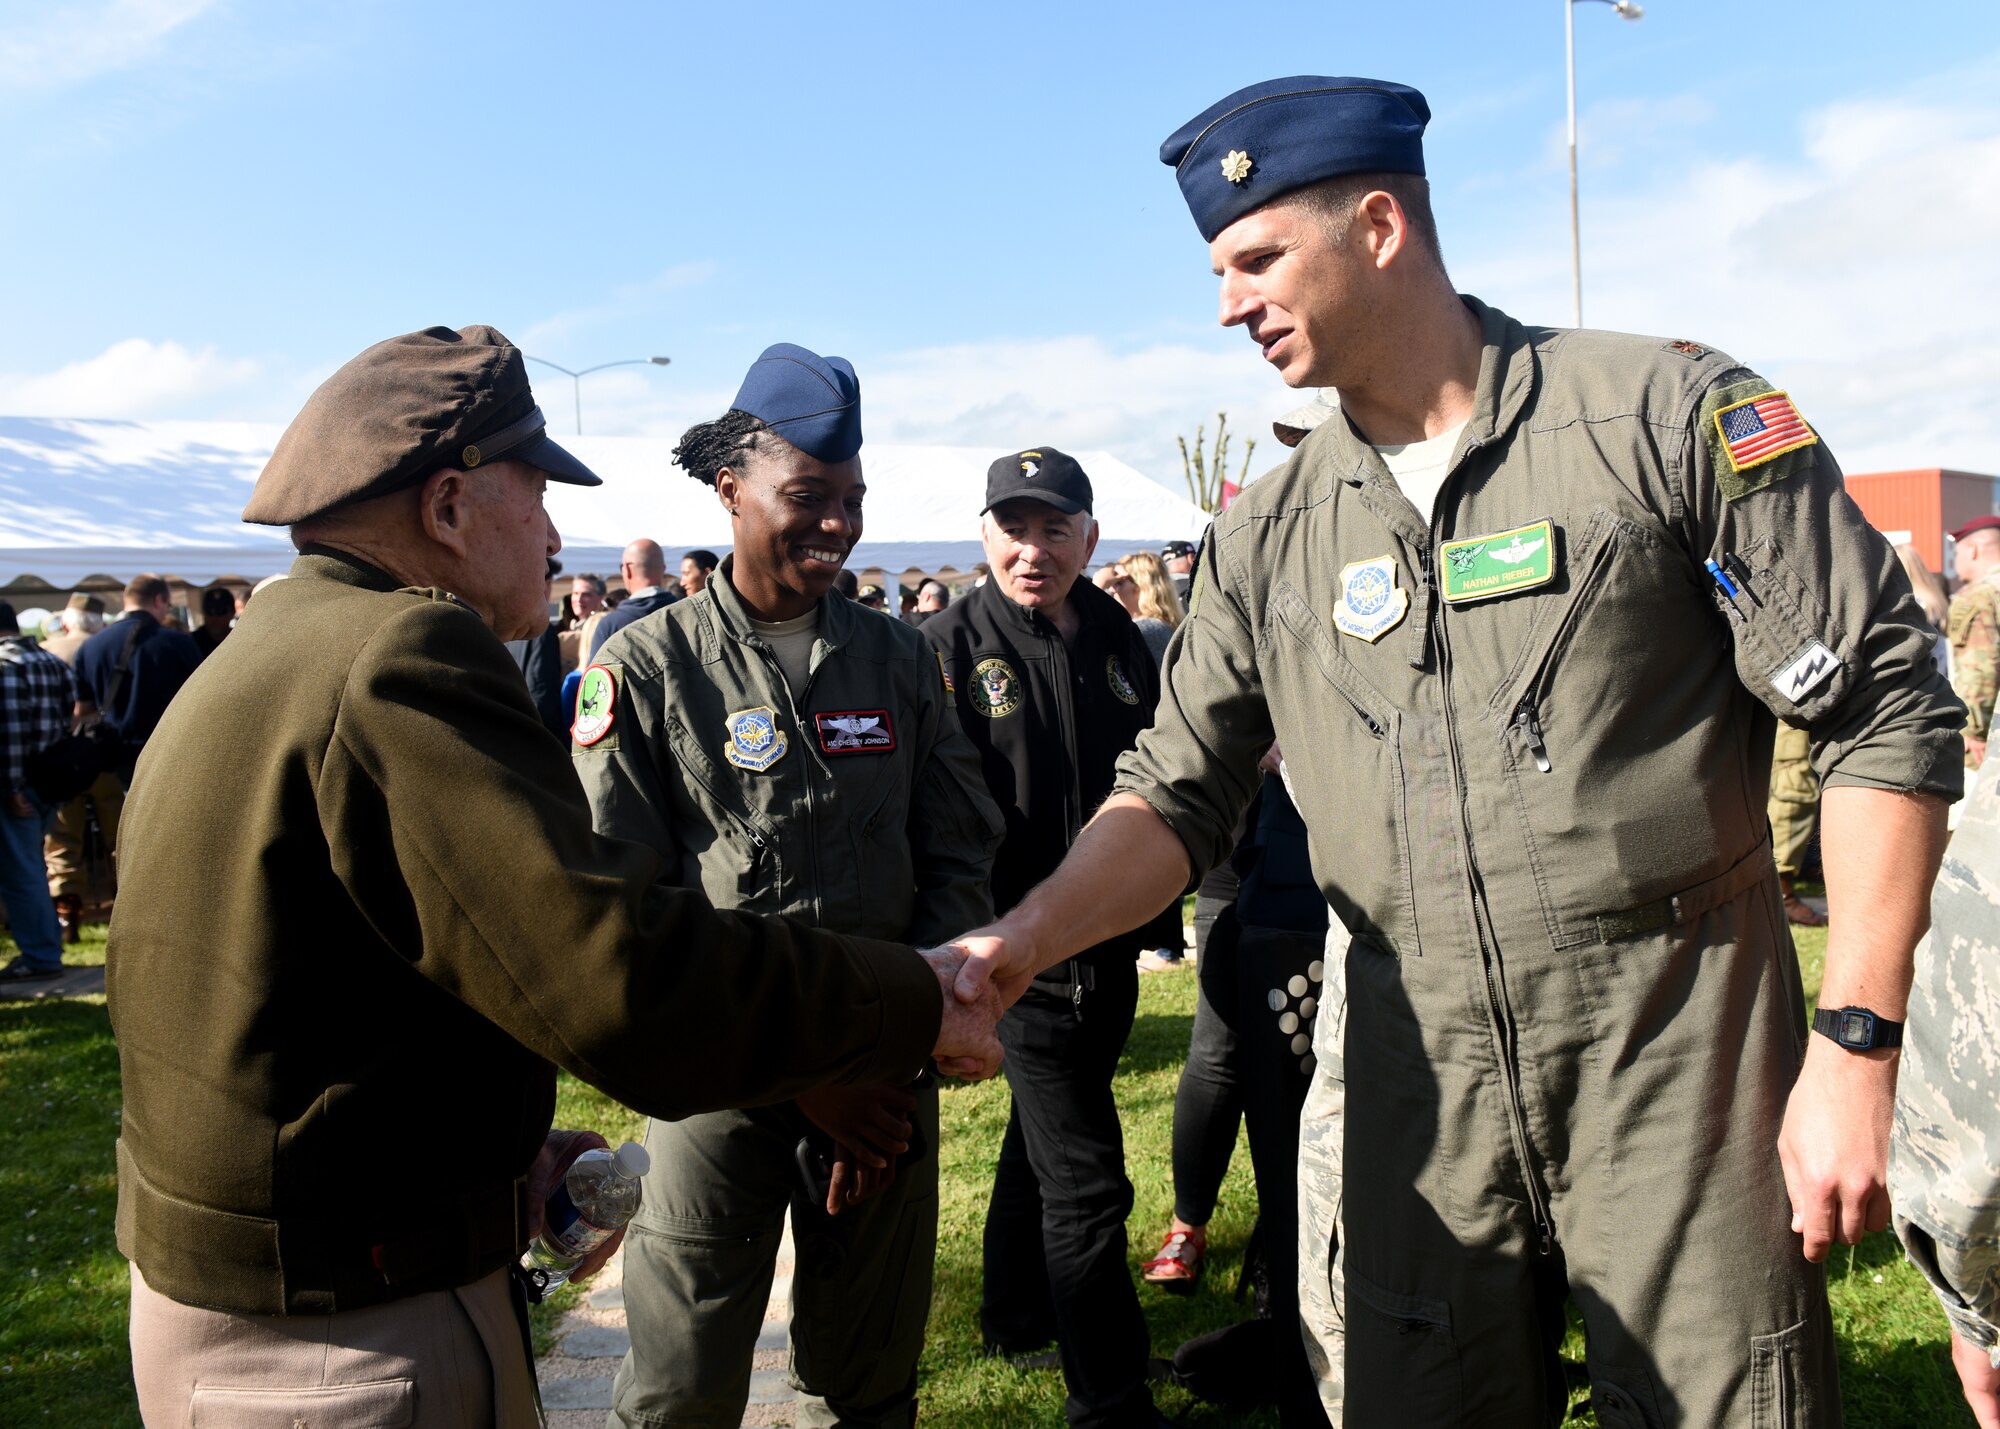 World War 2 survivor wearing World War 2 uniform shakes hands with Man in current Air Force flightsuit